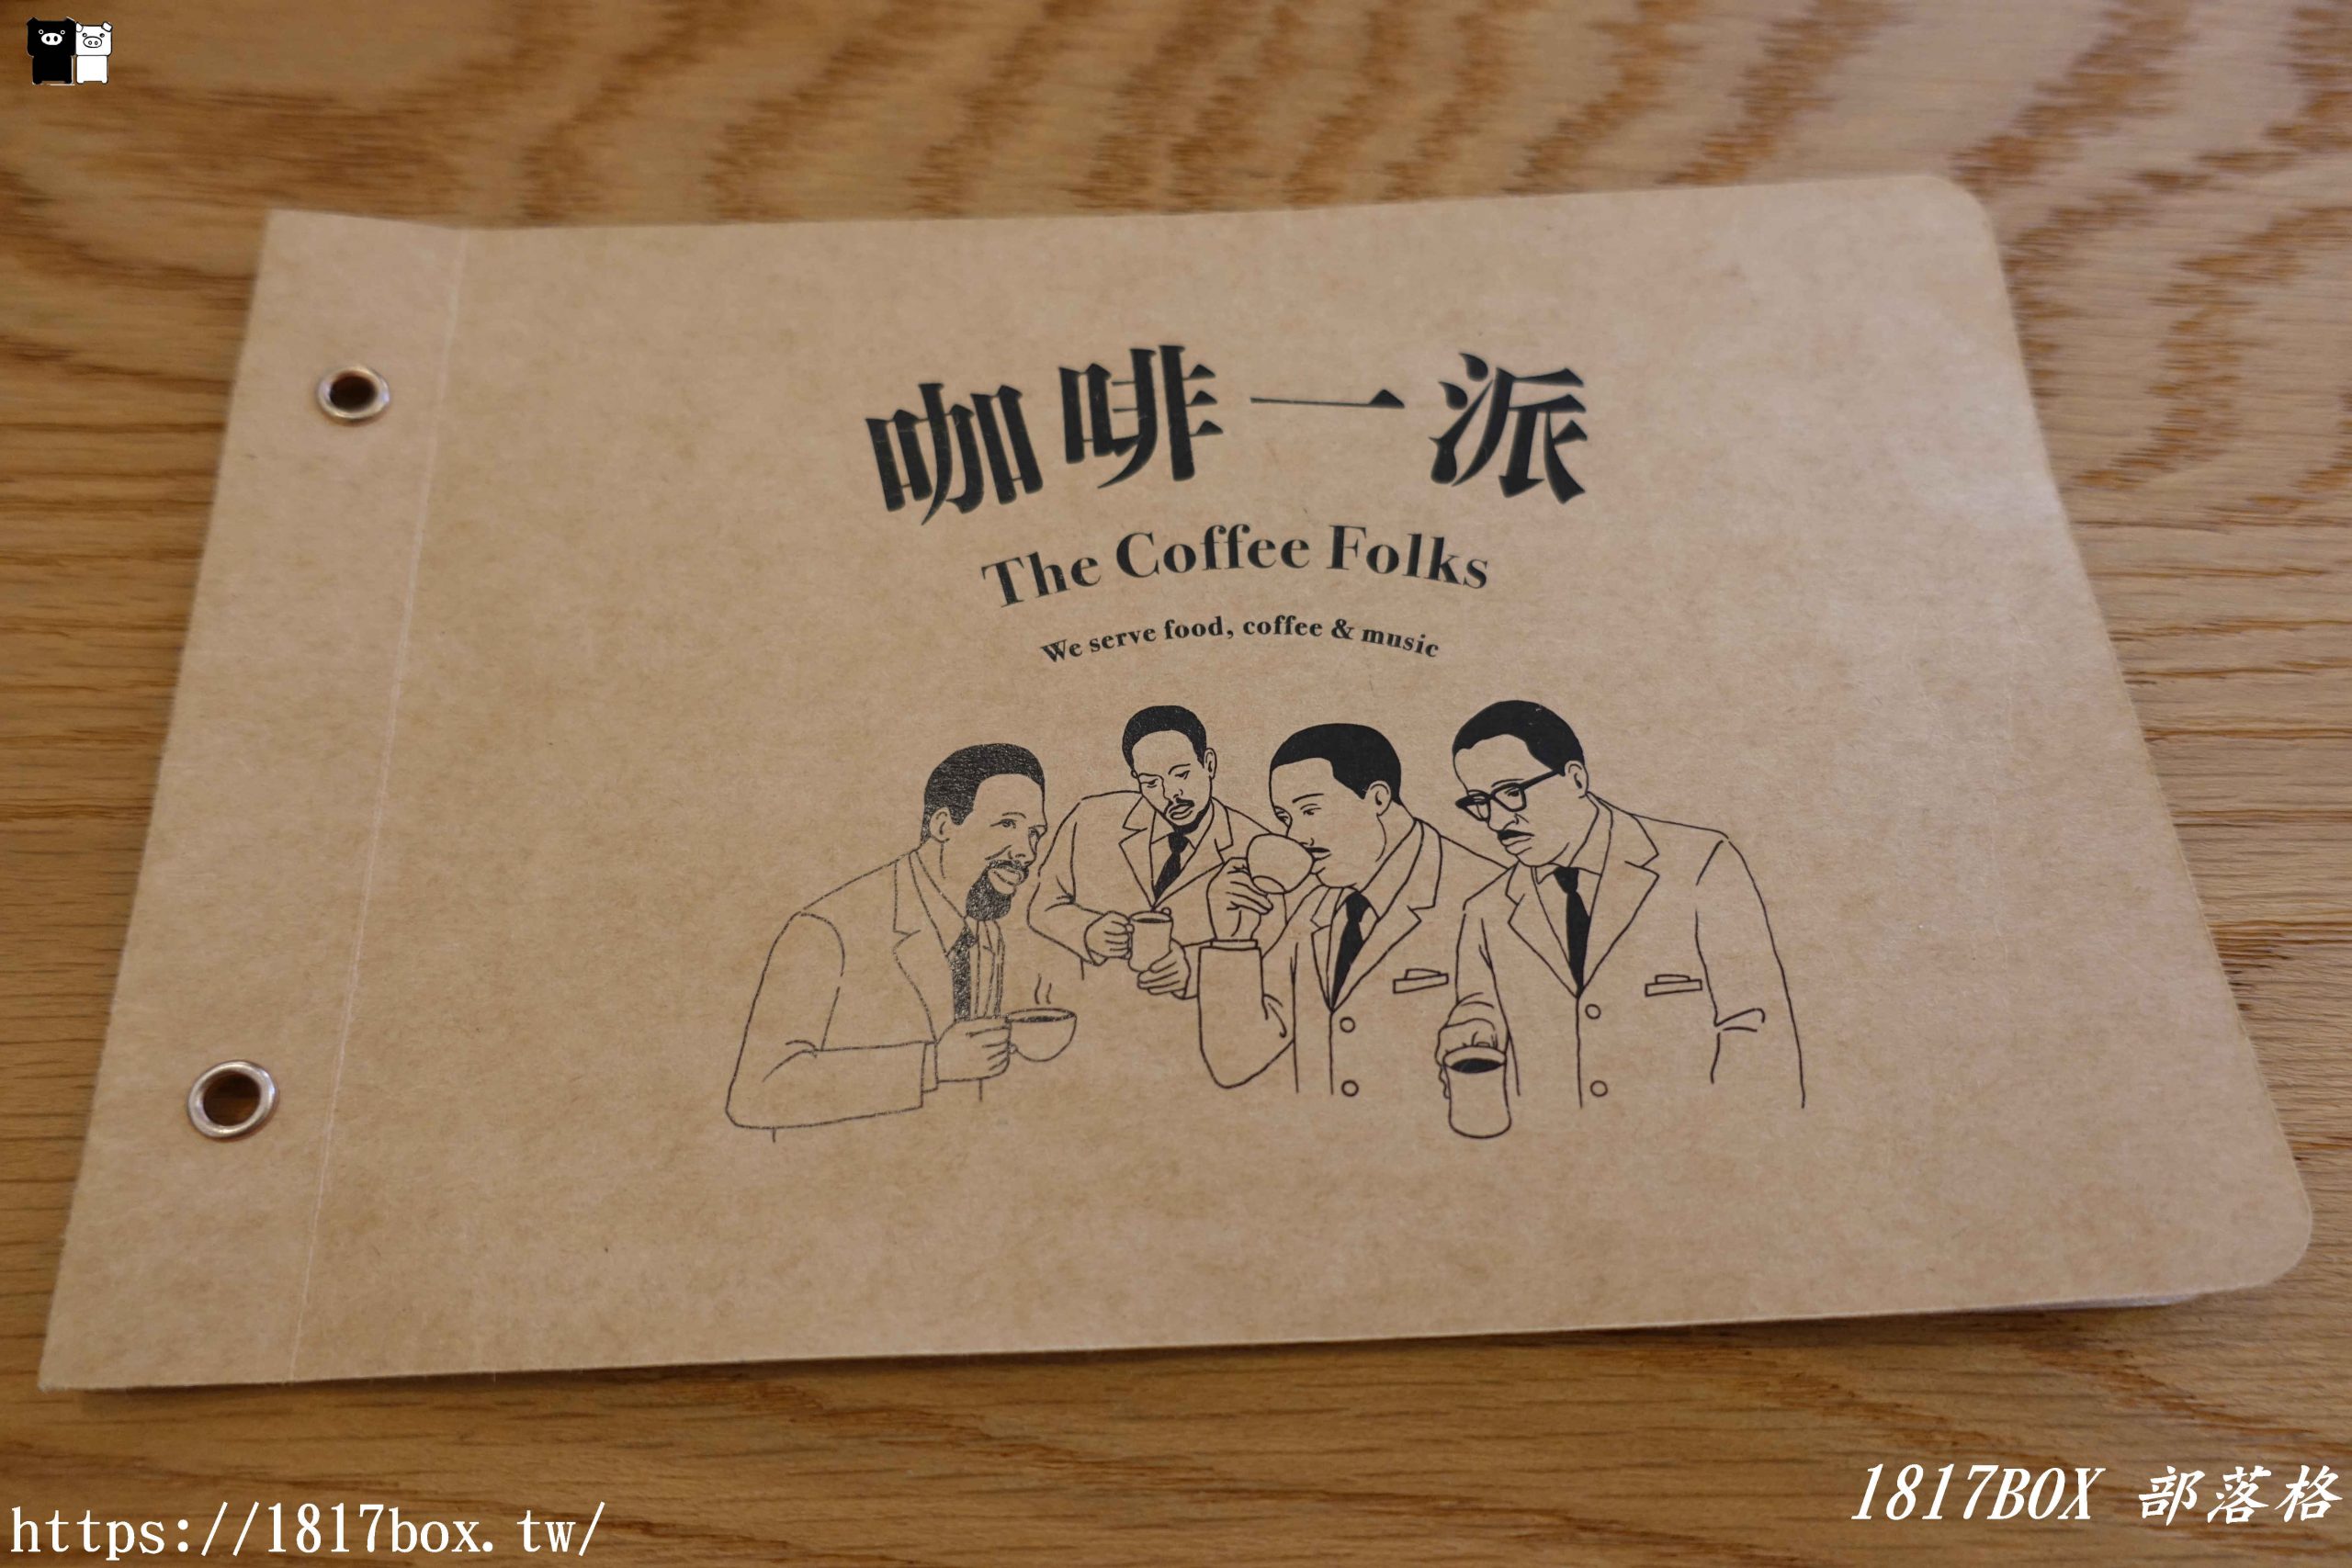 【嘉義。西區】咖啡一派 The Coffee Folks。黑膠唱片音樂。新加坡經典早餐 @1817BOX部落格